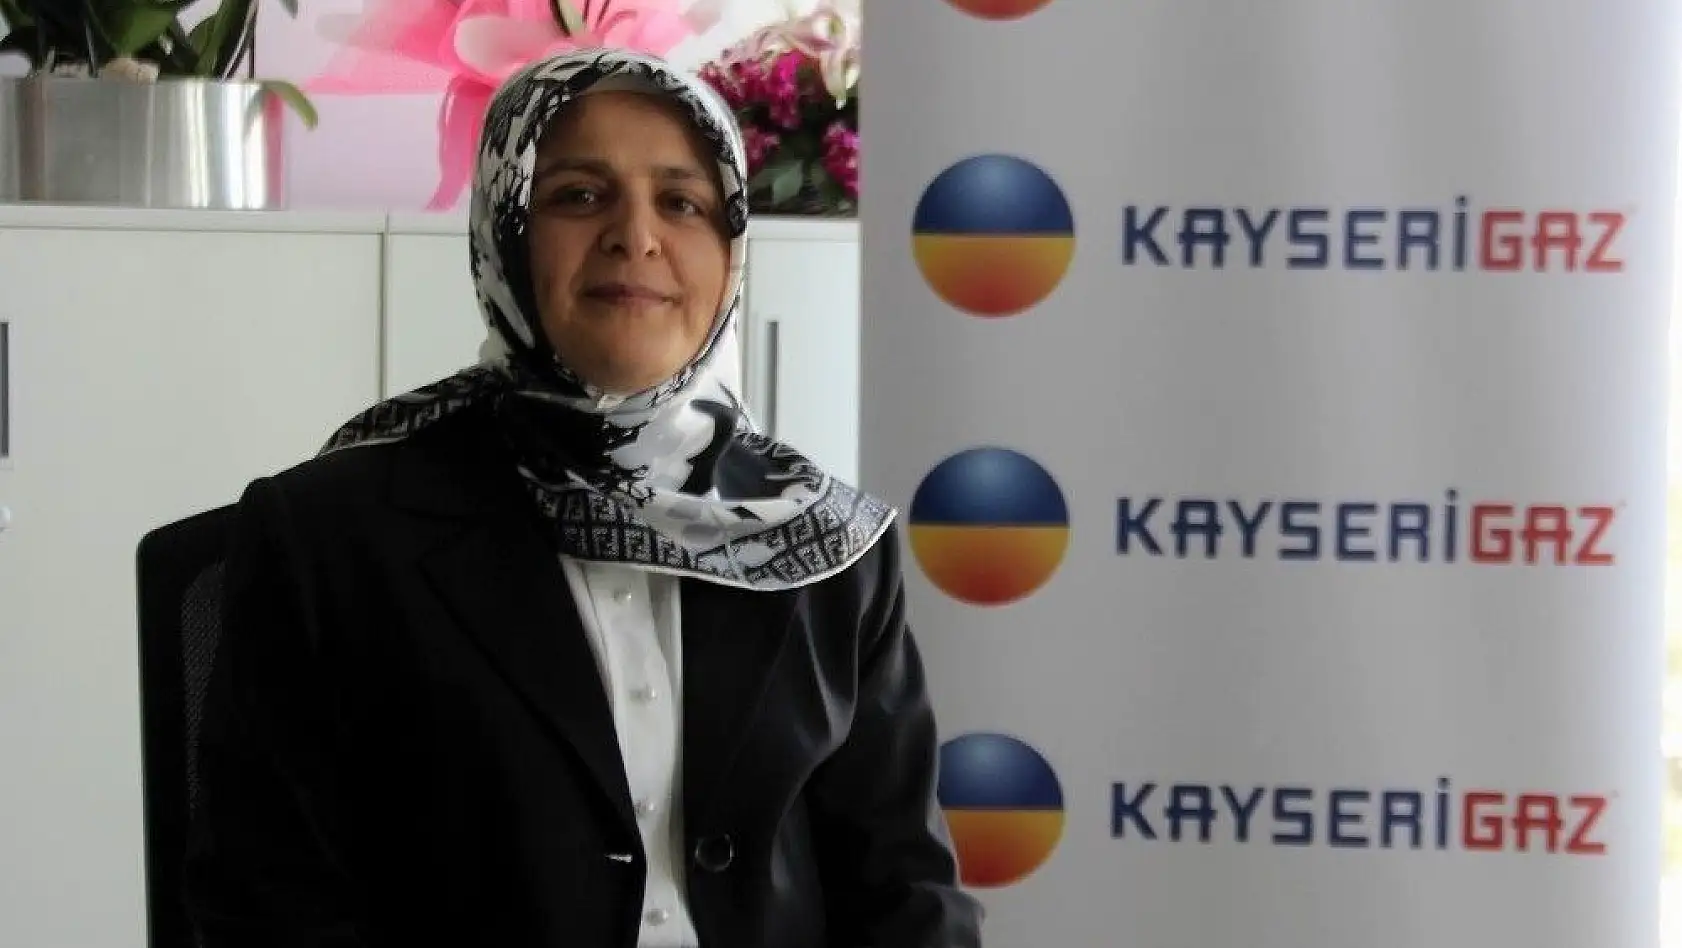 Türkiye'ye enerji veren kadın Kayserigaz'dan